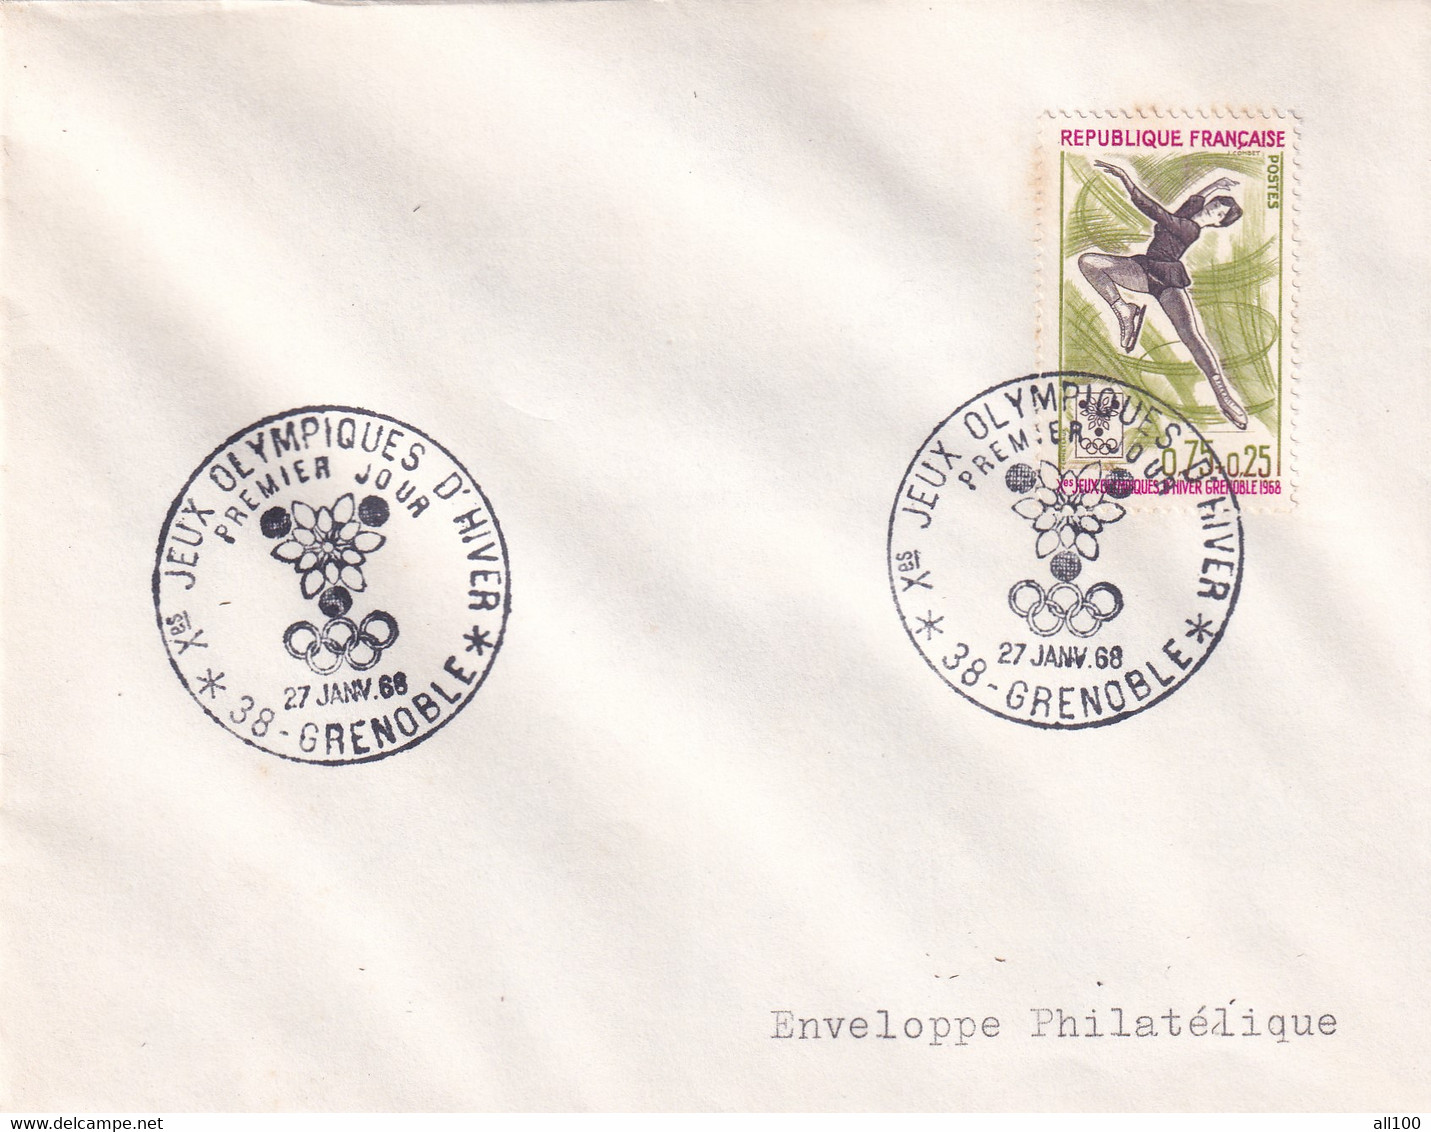 A21887 - Jeux Olympiques D'Hiver Grenoble Cover Envelope Unused 1968 Stamp Republique Francaise Enveloppe Philatelique - Invierno 1968: Grenoble